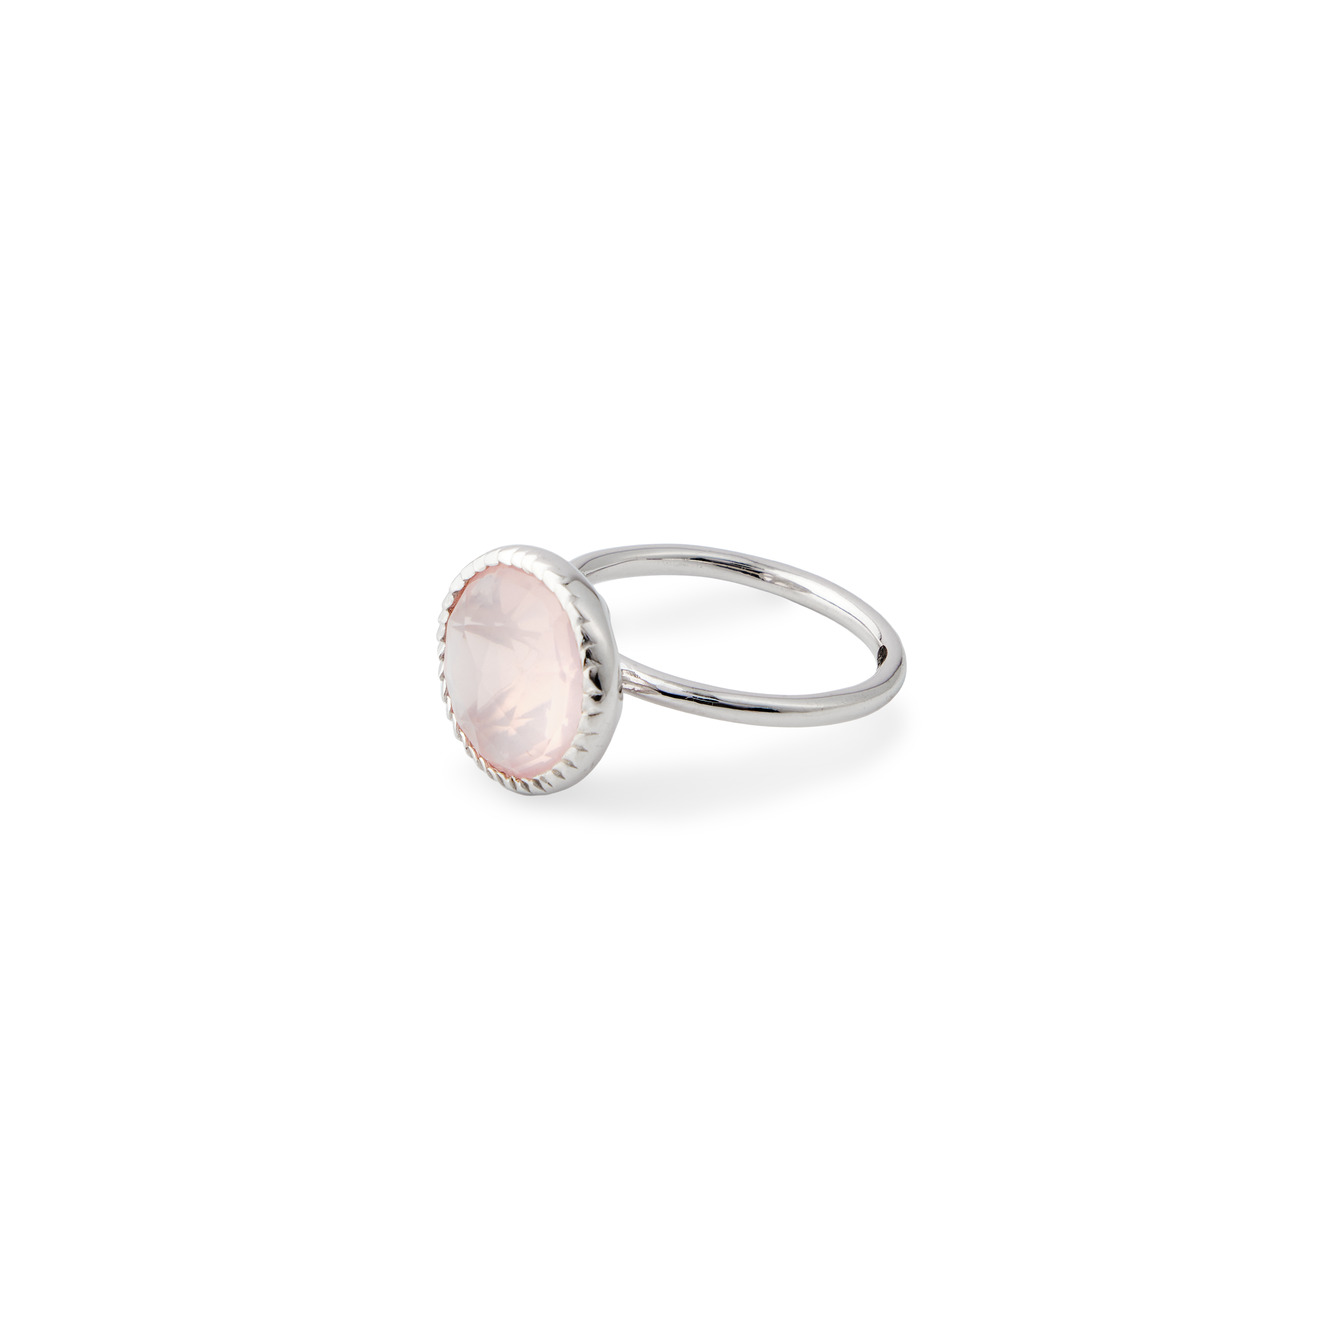 Wisteria Gems Серебряное кольцо тонкое с крупным розовым кварцем wisteria gems незакрытое позолоченное кольцо с гранатом и розовым кварцем